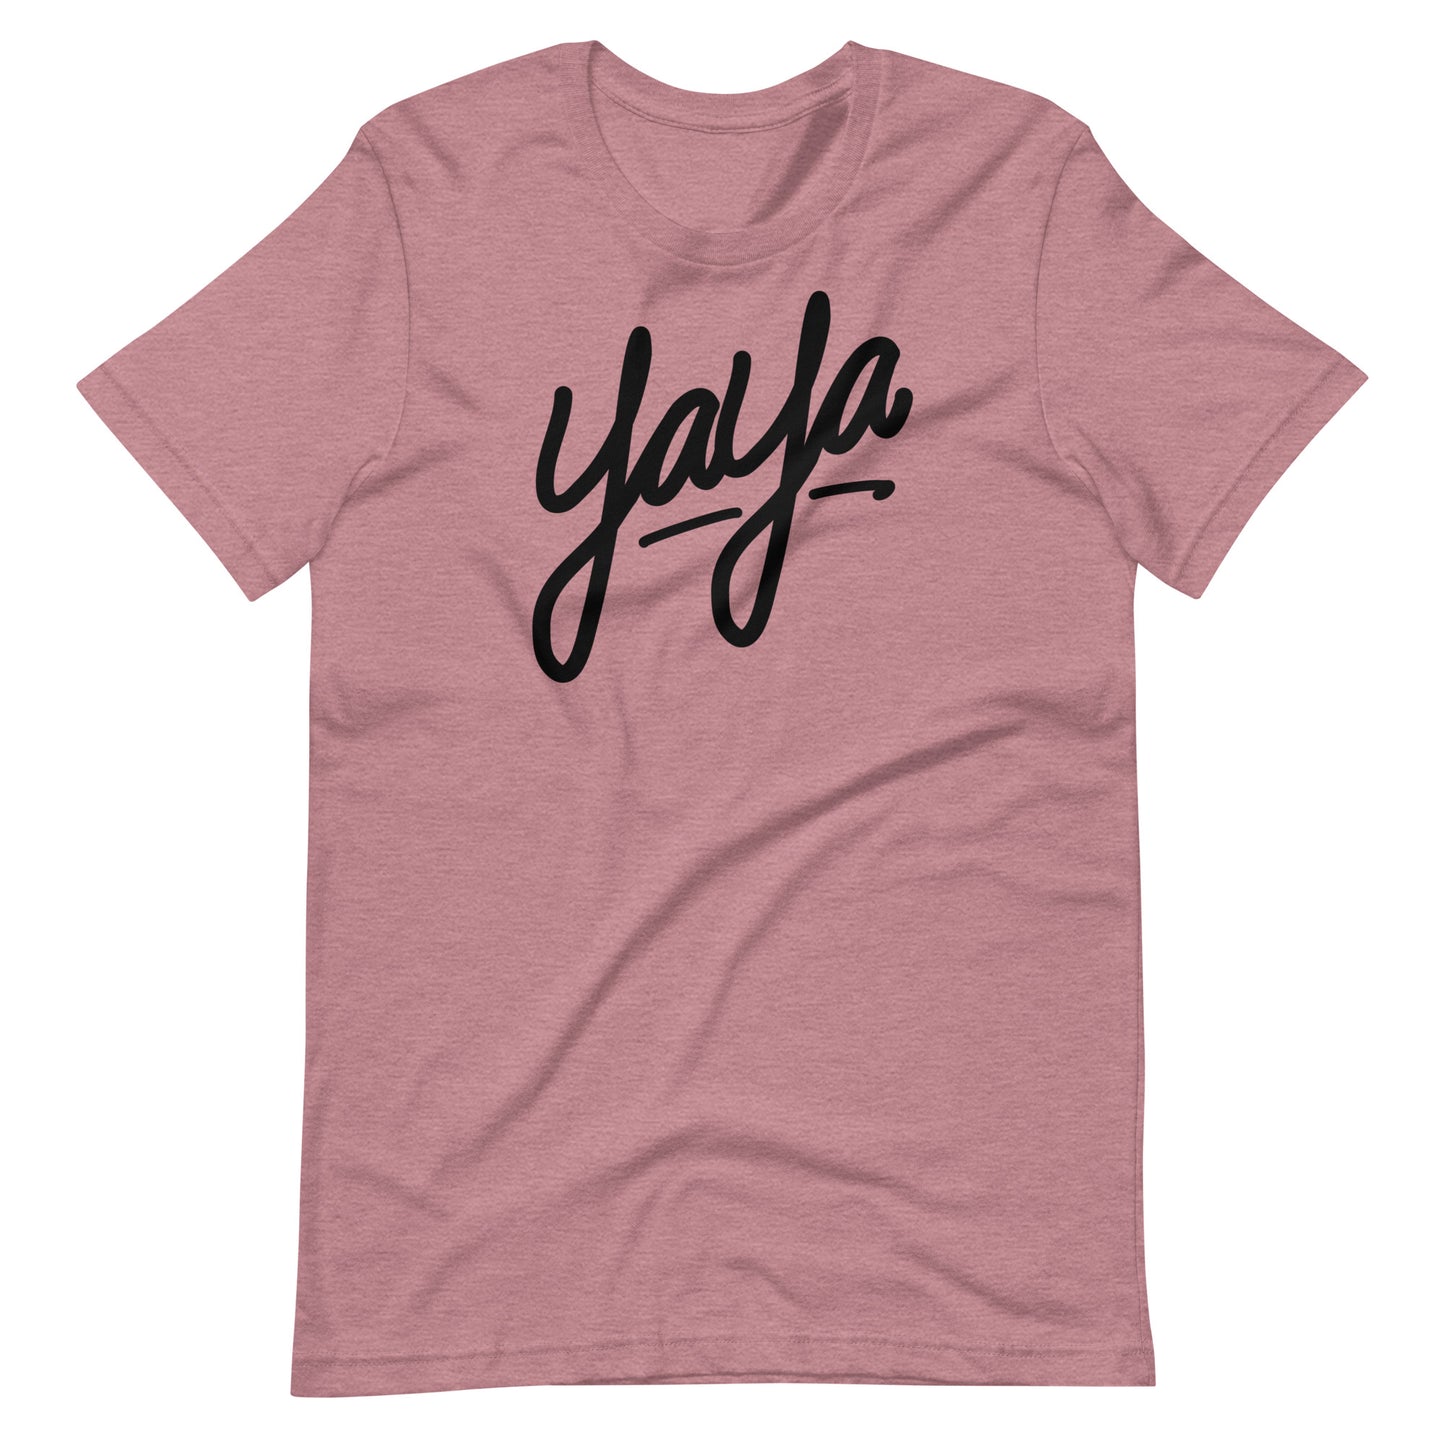 Yaya T-shirt (Black)